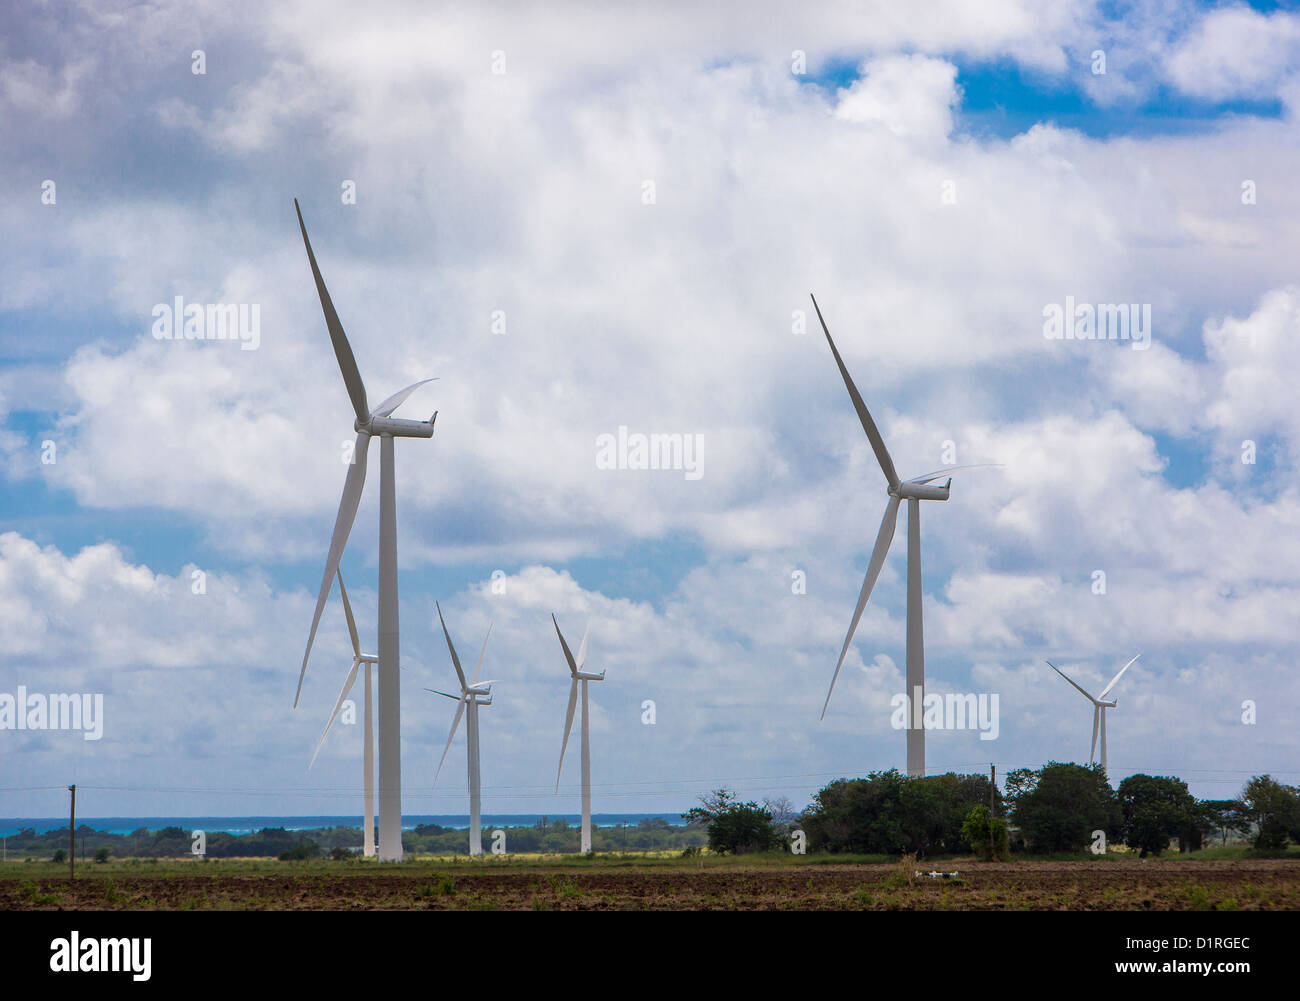 PONCE, PUERTO RICO - Windmühlen, die Erzeugung von Strom aus Windkraft, an der Südküste in der Nähe von Santa Isabel östlich von Ponce. Stockfoto